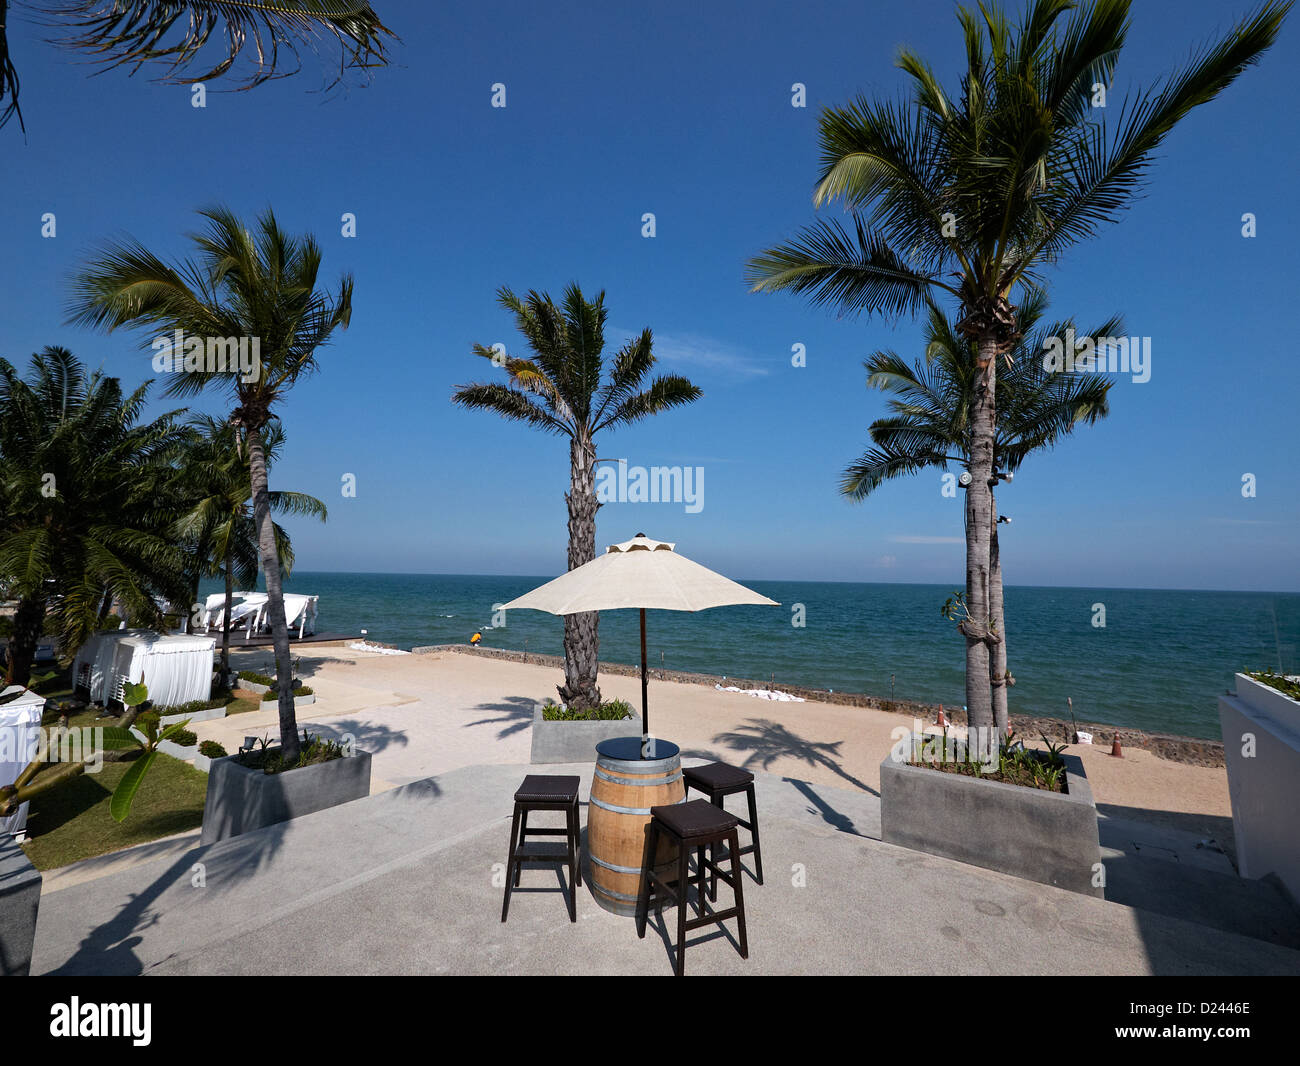 Scena tropicale che si affaccia sul mare con palme e ombrelloni. Tailandia hotel resort SUDEST ASIATICO Foto Stock